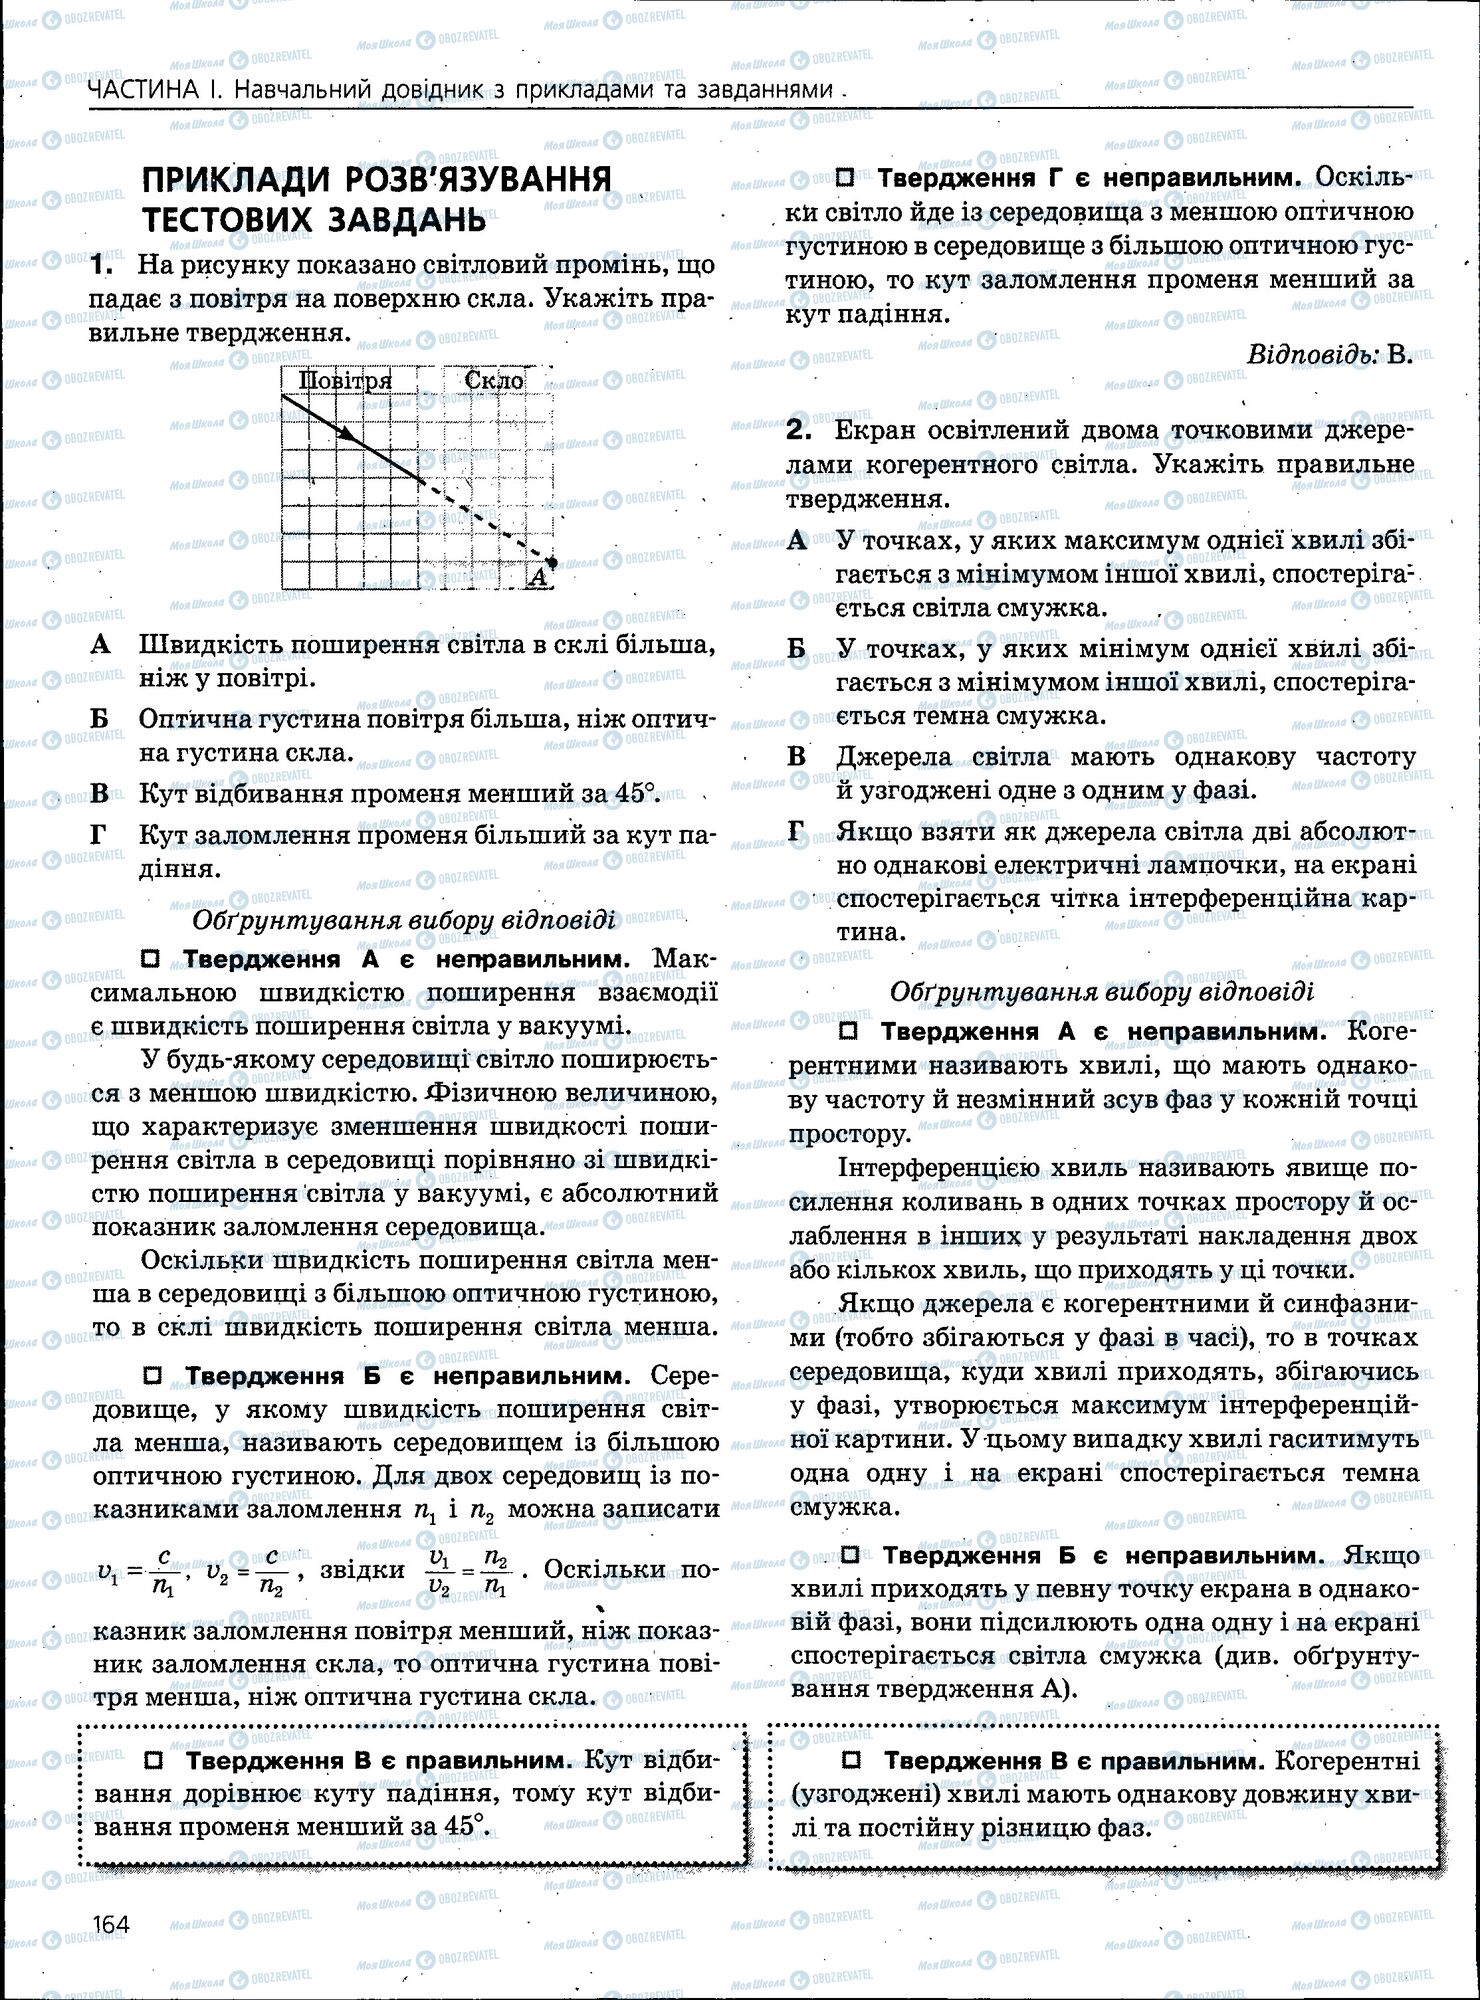 ЗНО Физика 11 класс страница 164